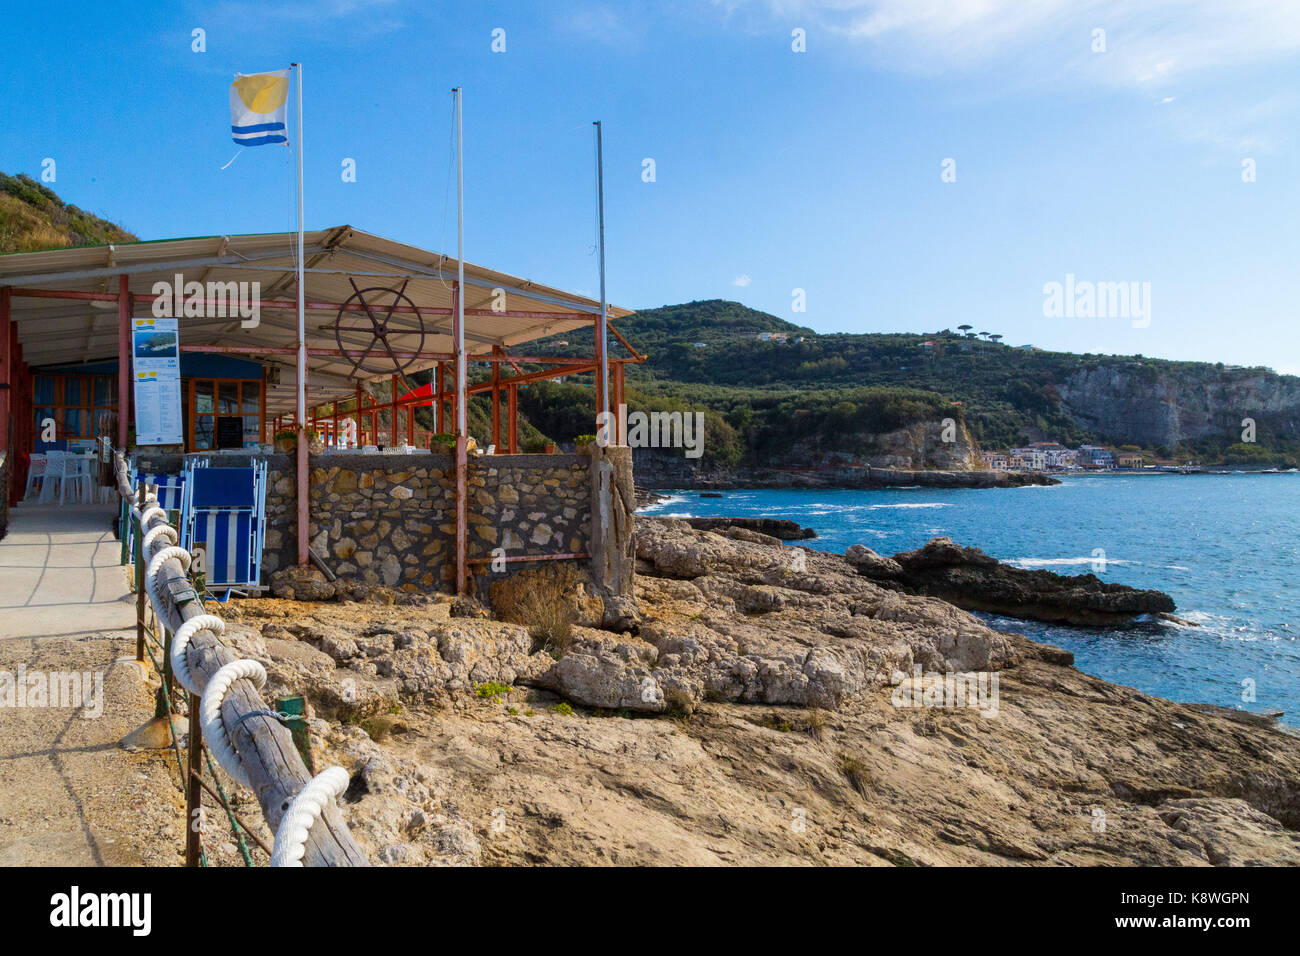 Sorrento, Italien, 18. September 2017. Ein Restaurant am Meer in der Nähe des Weilers von Poulo, in der Nähe von Sorrento, Italien. © Paul Davey Stockfoto